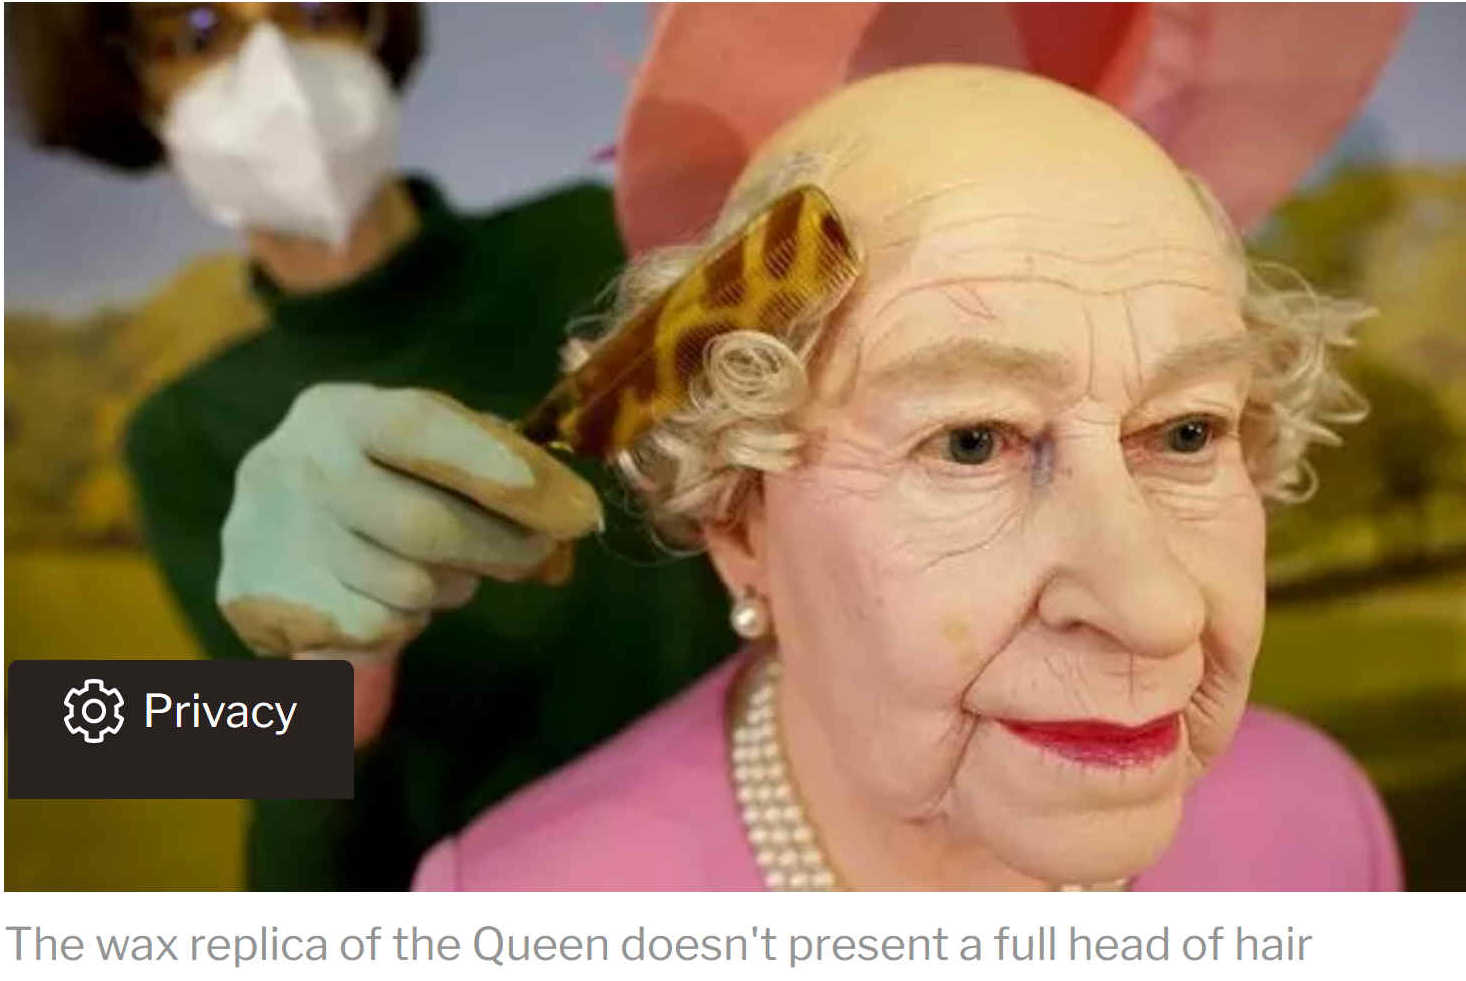 Bald headed Queen Elizabeth II waxworks head